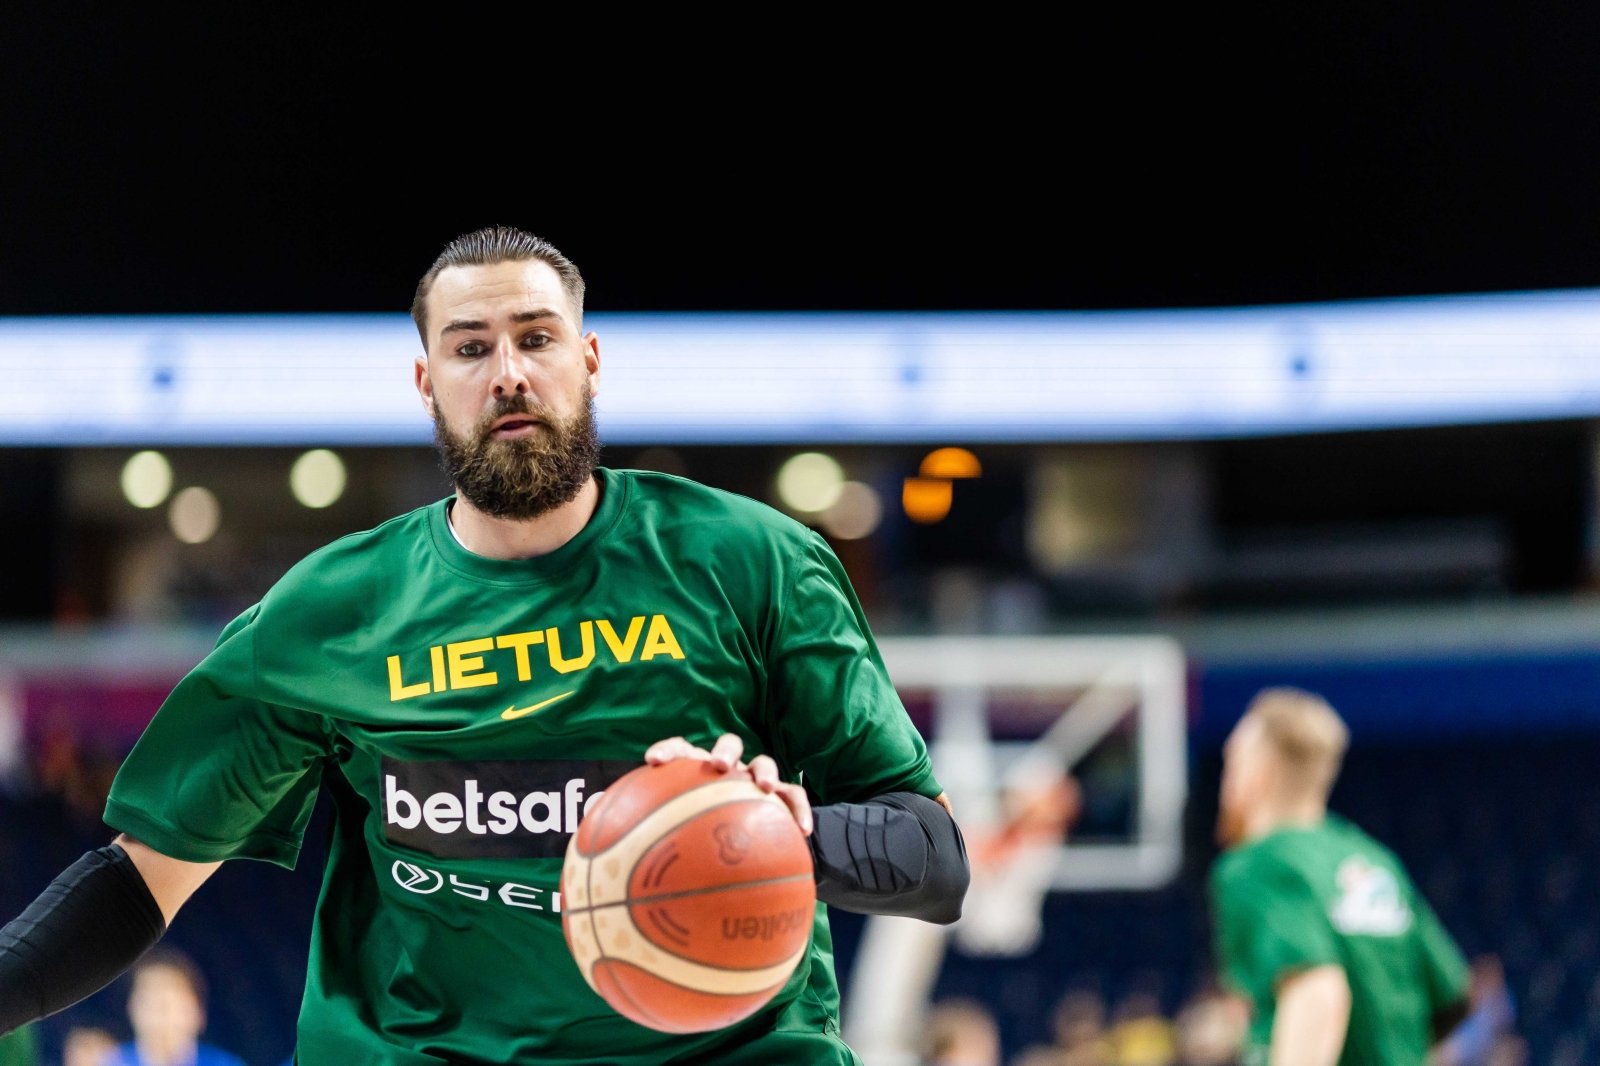 Le notizie più calde del Campionato Europeo di Pallacanestro – nella “Zona Basket” tornano su “Delfi TV”